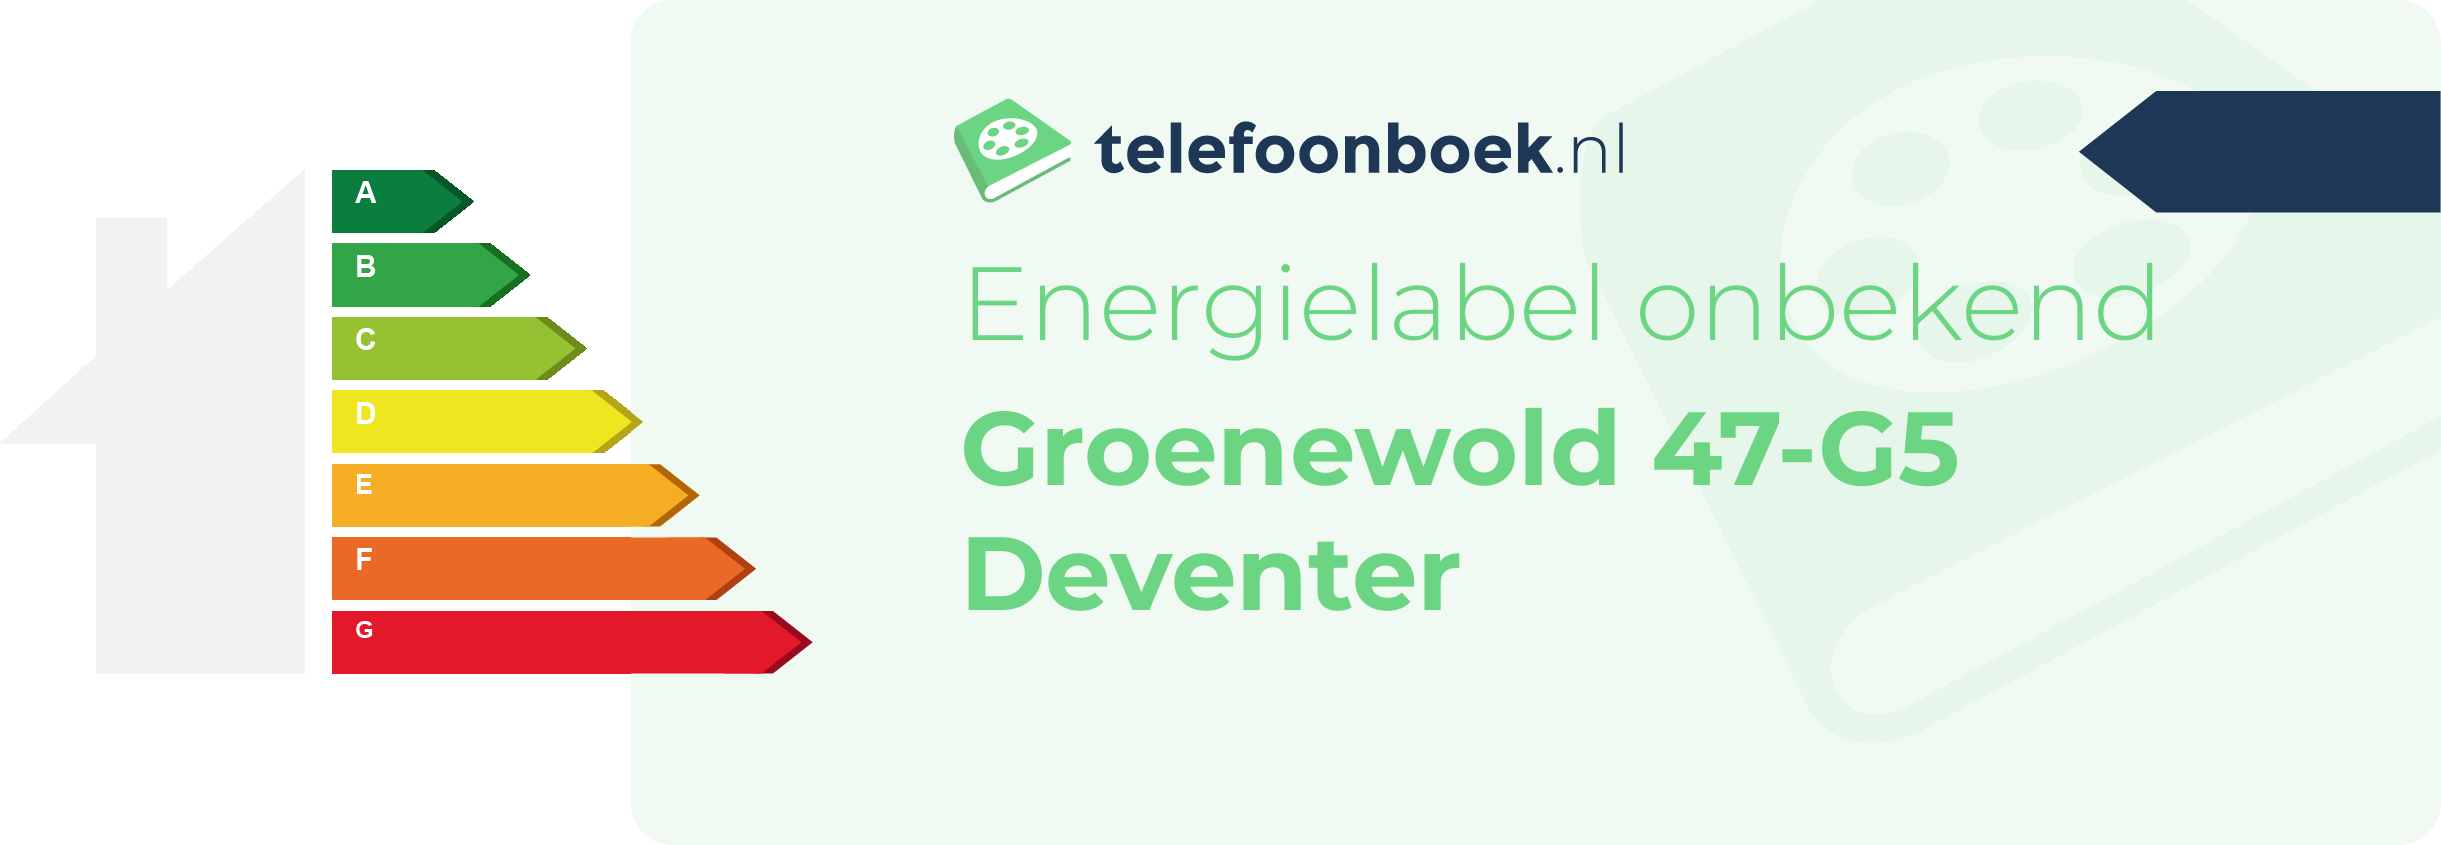 Energielabel Groenewold 47-G5 Deventer